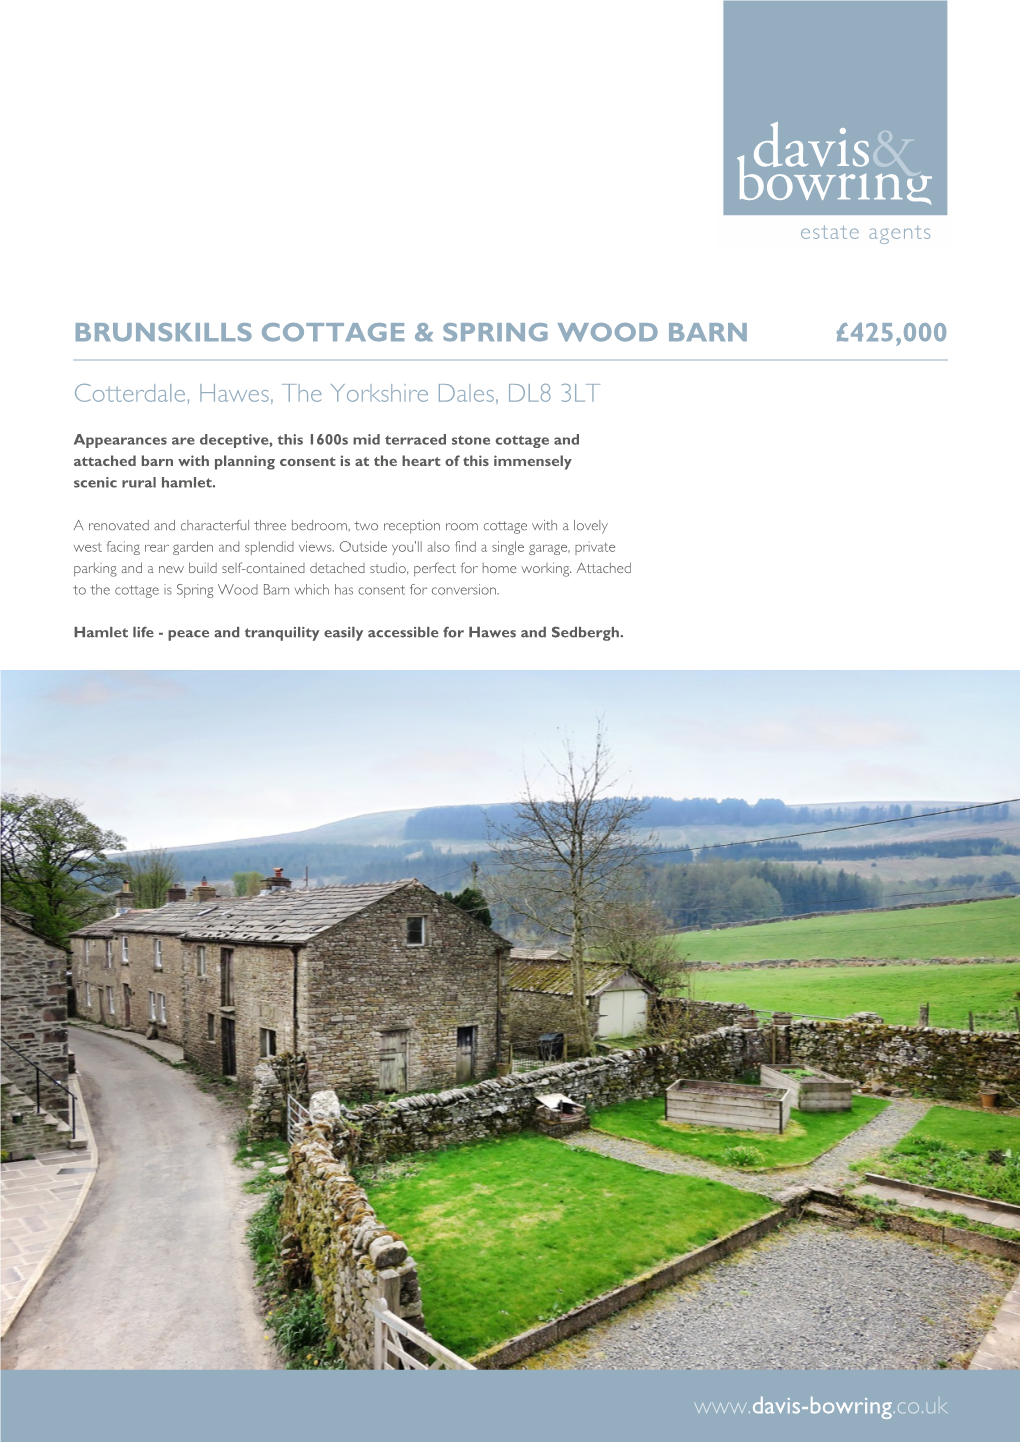 Brunskills Cottage & Barn, Cotterdale